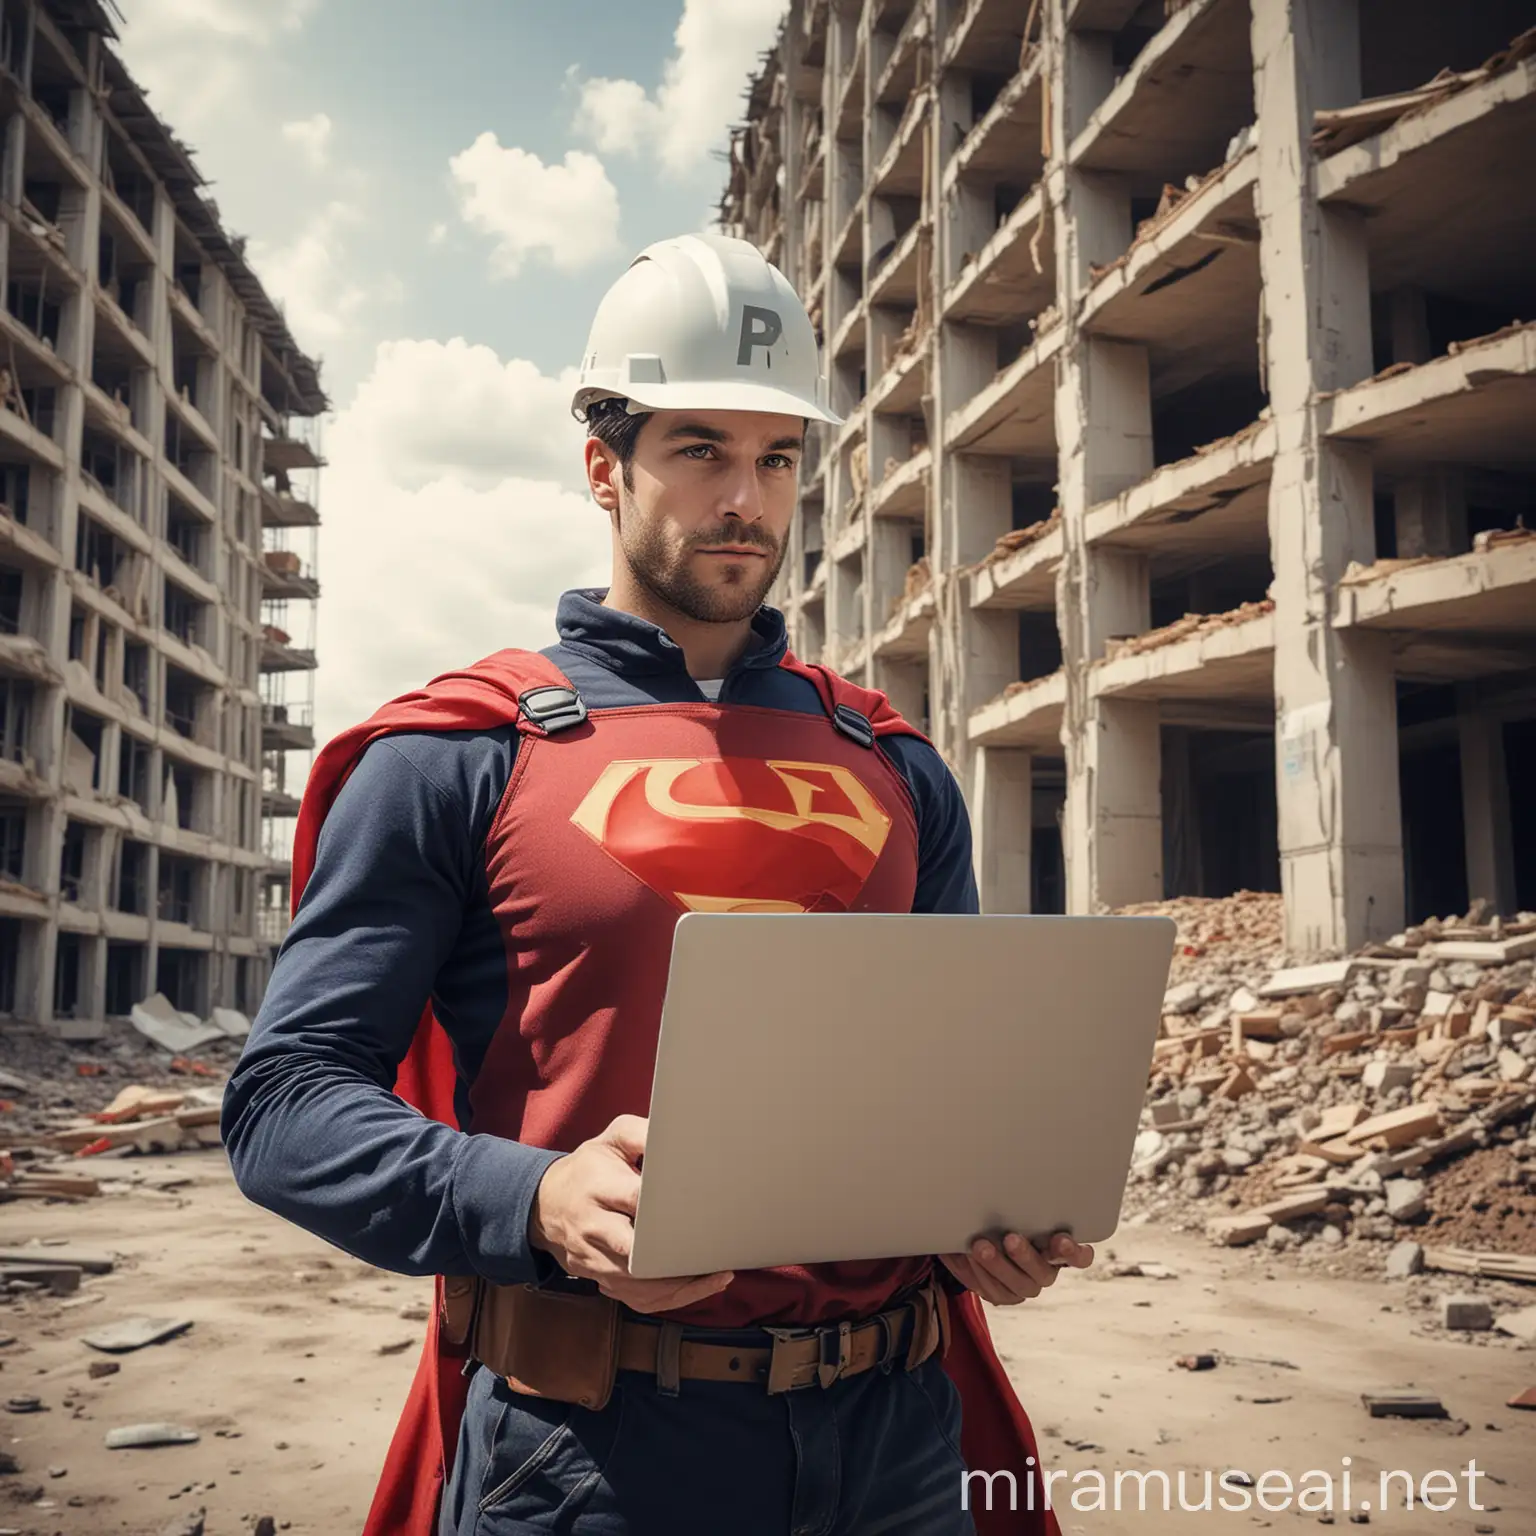 Erstelle bitte einen Mann im Superheldenkostüm, mit Laptop in der Hand, Bauhelm auf dem Kopf, vor eine Baustelle eines Wohnhauses. Der Superheld hat ein Schild in der zweiten Hand, auf diesem steht: "